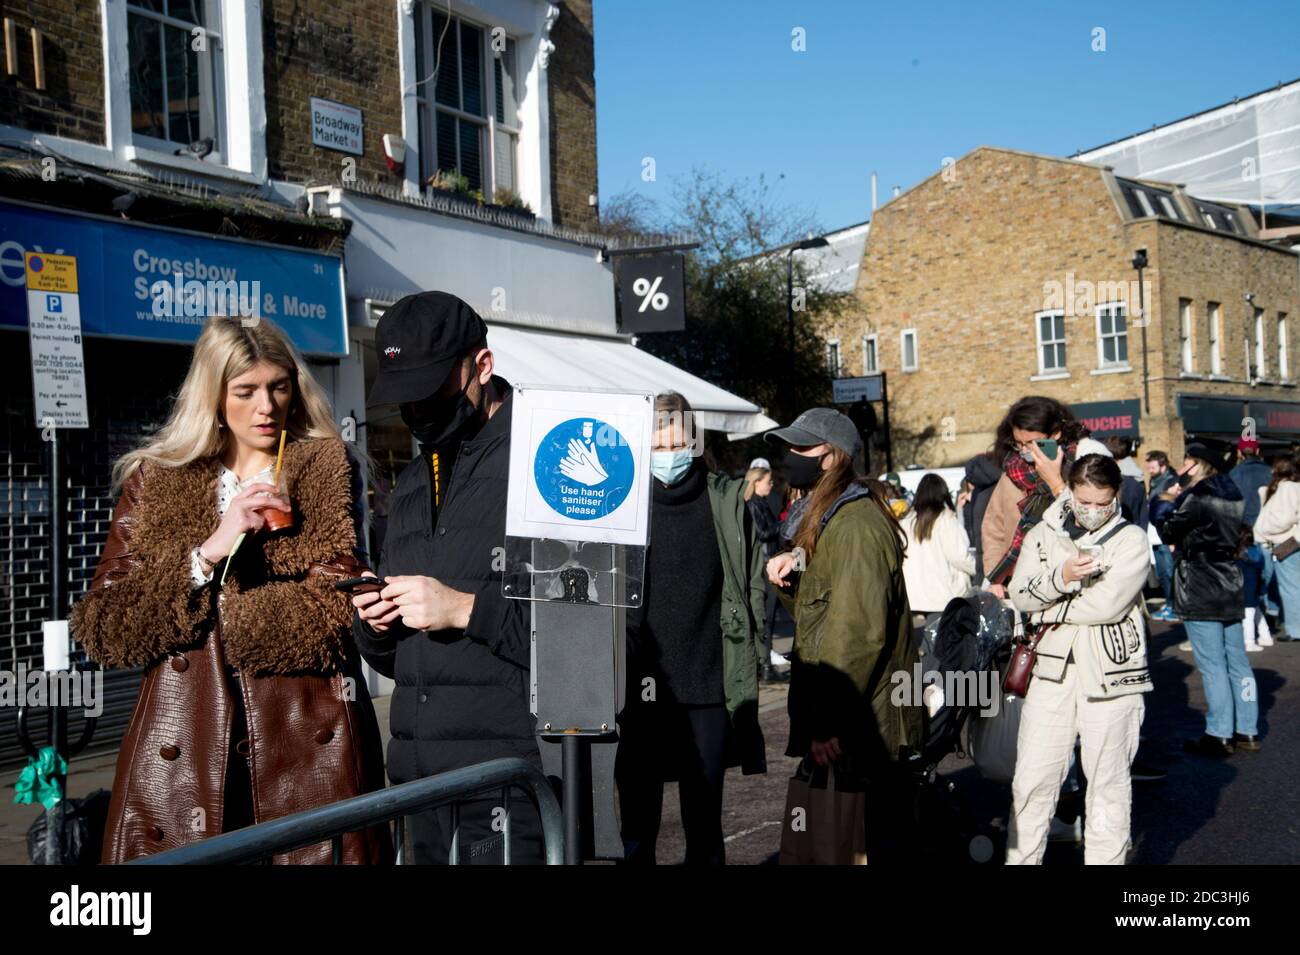 Hackney, London November 2020 während der Covid-19 (Coronavirus) Pandemie. Sperre 2. Broadway Market. Menschen mit Gesichtsmasken warten darauf, einen Bereich zu betreten Stockfoto